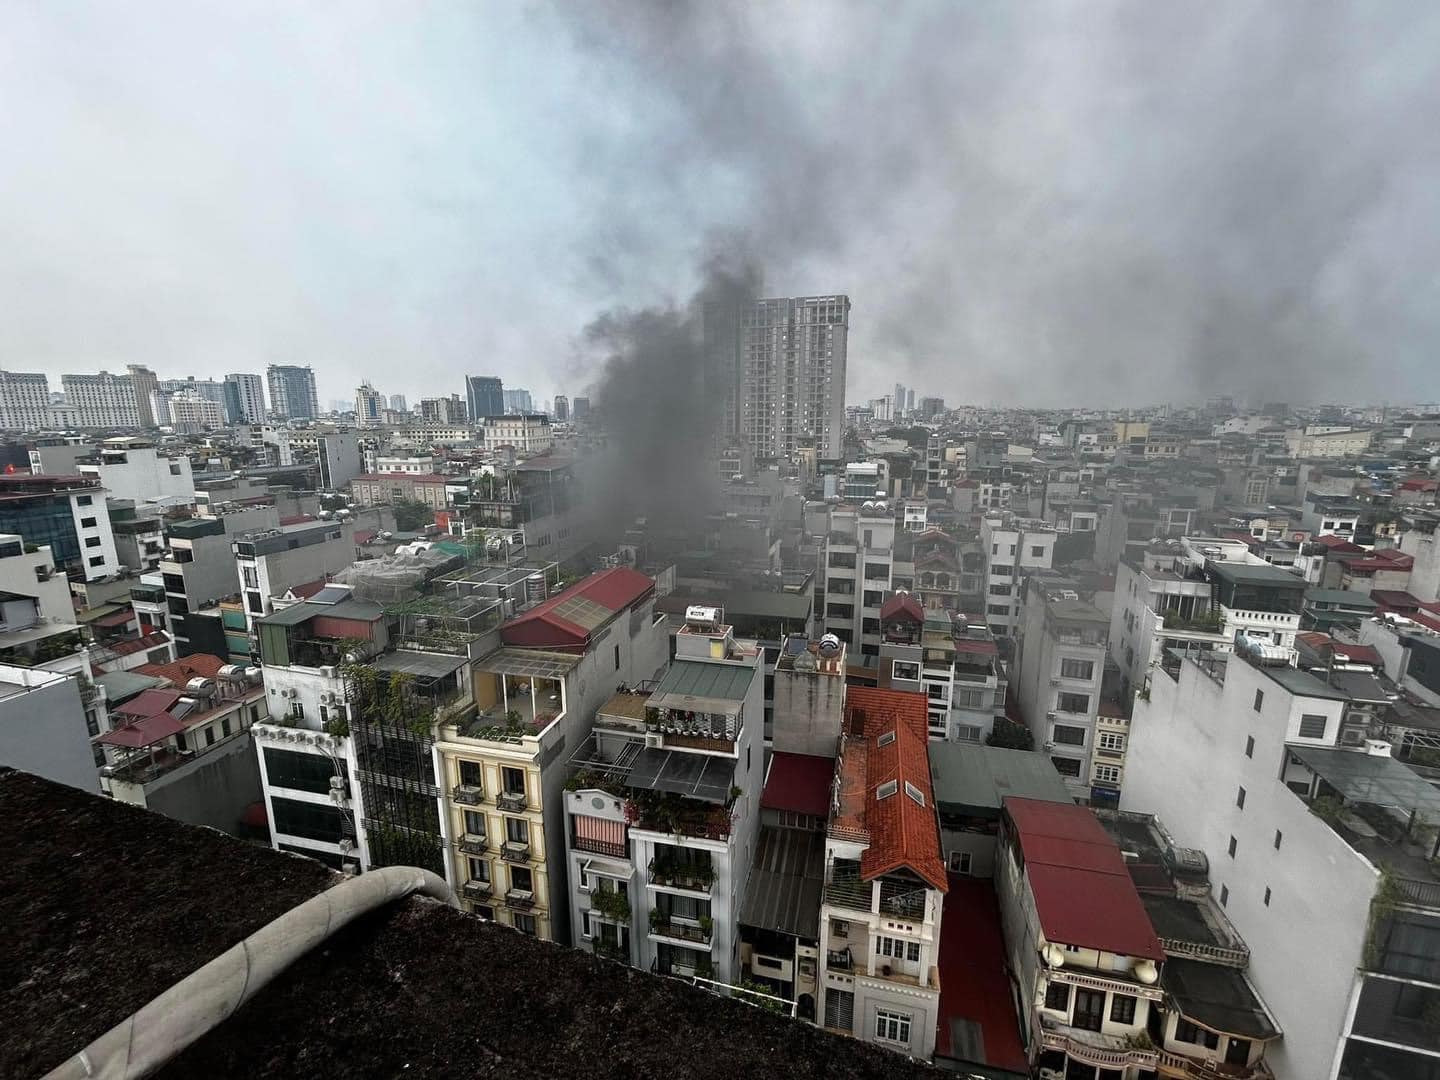 Thêm 1 đám cháy chung cư Hà Nội, khói lớn bao trùm, bất cẩn từ việc đun nước sôi - ảnh 4